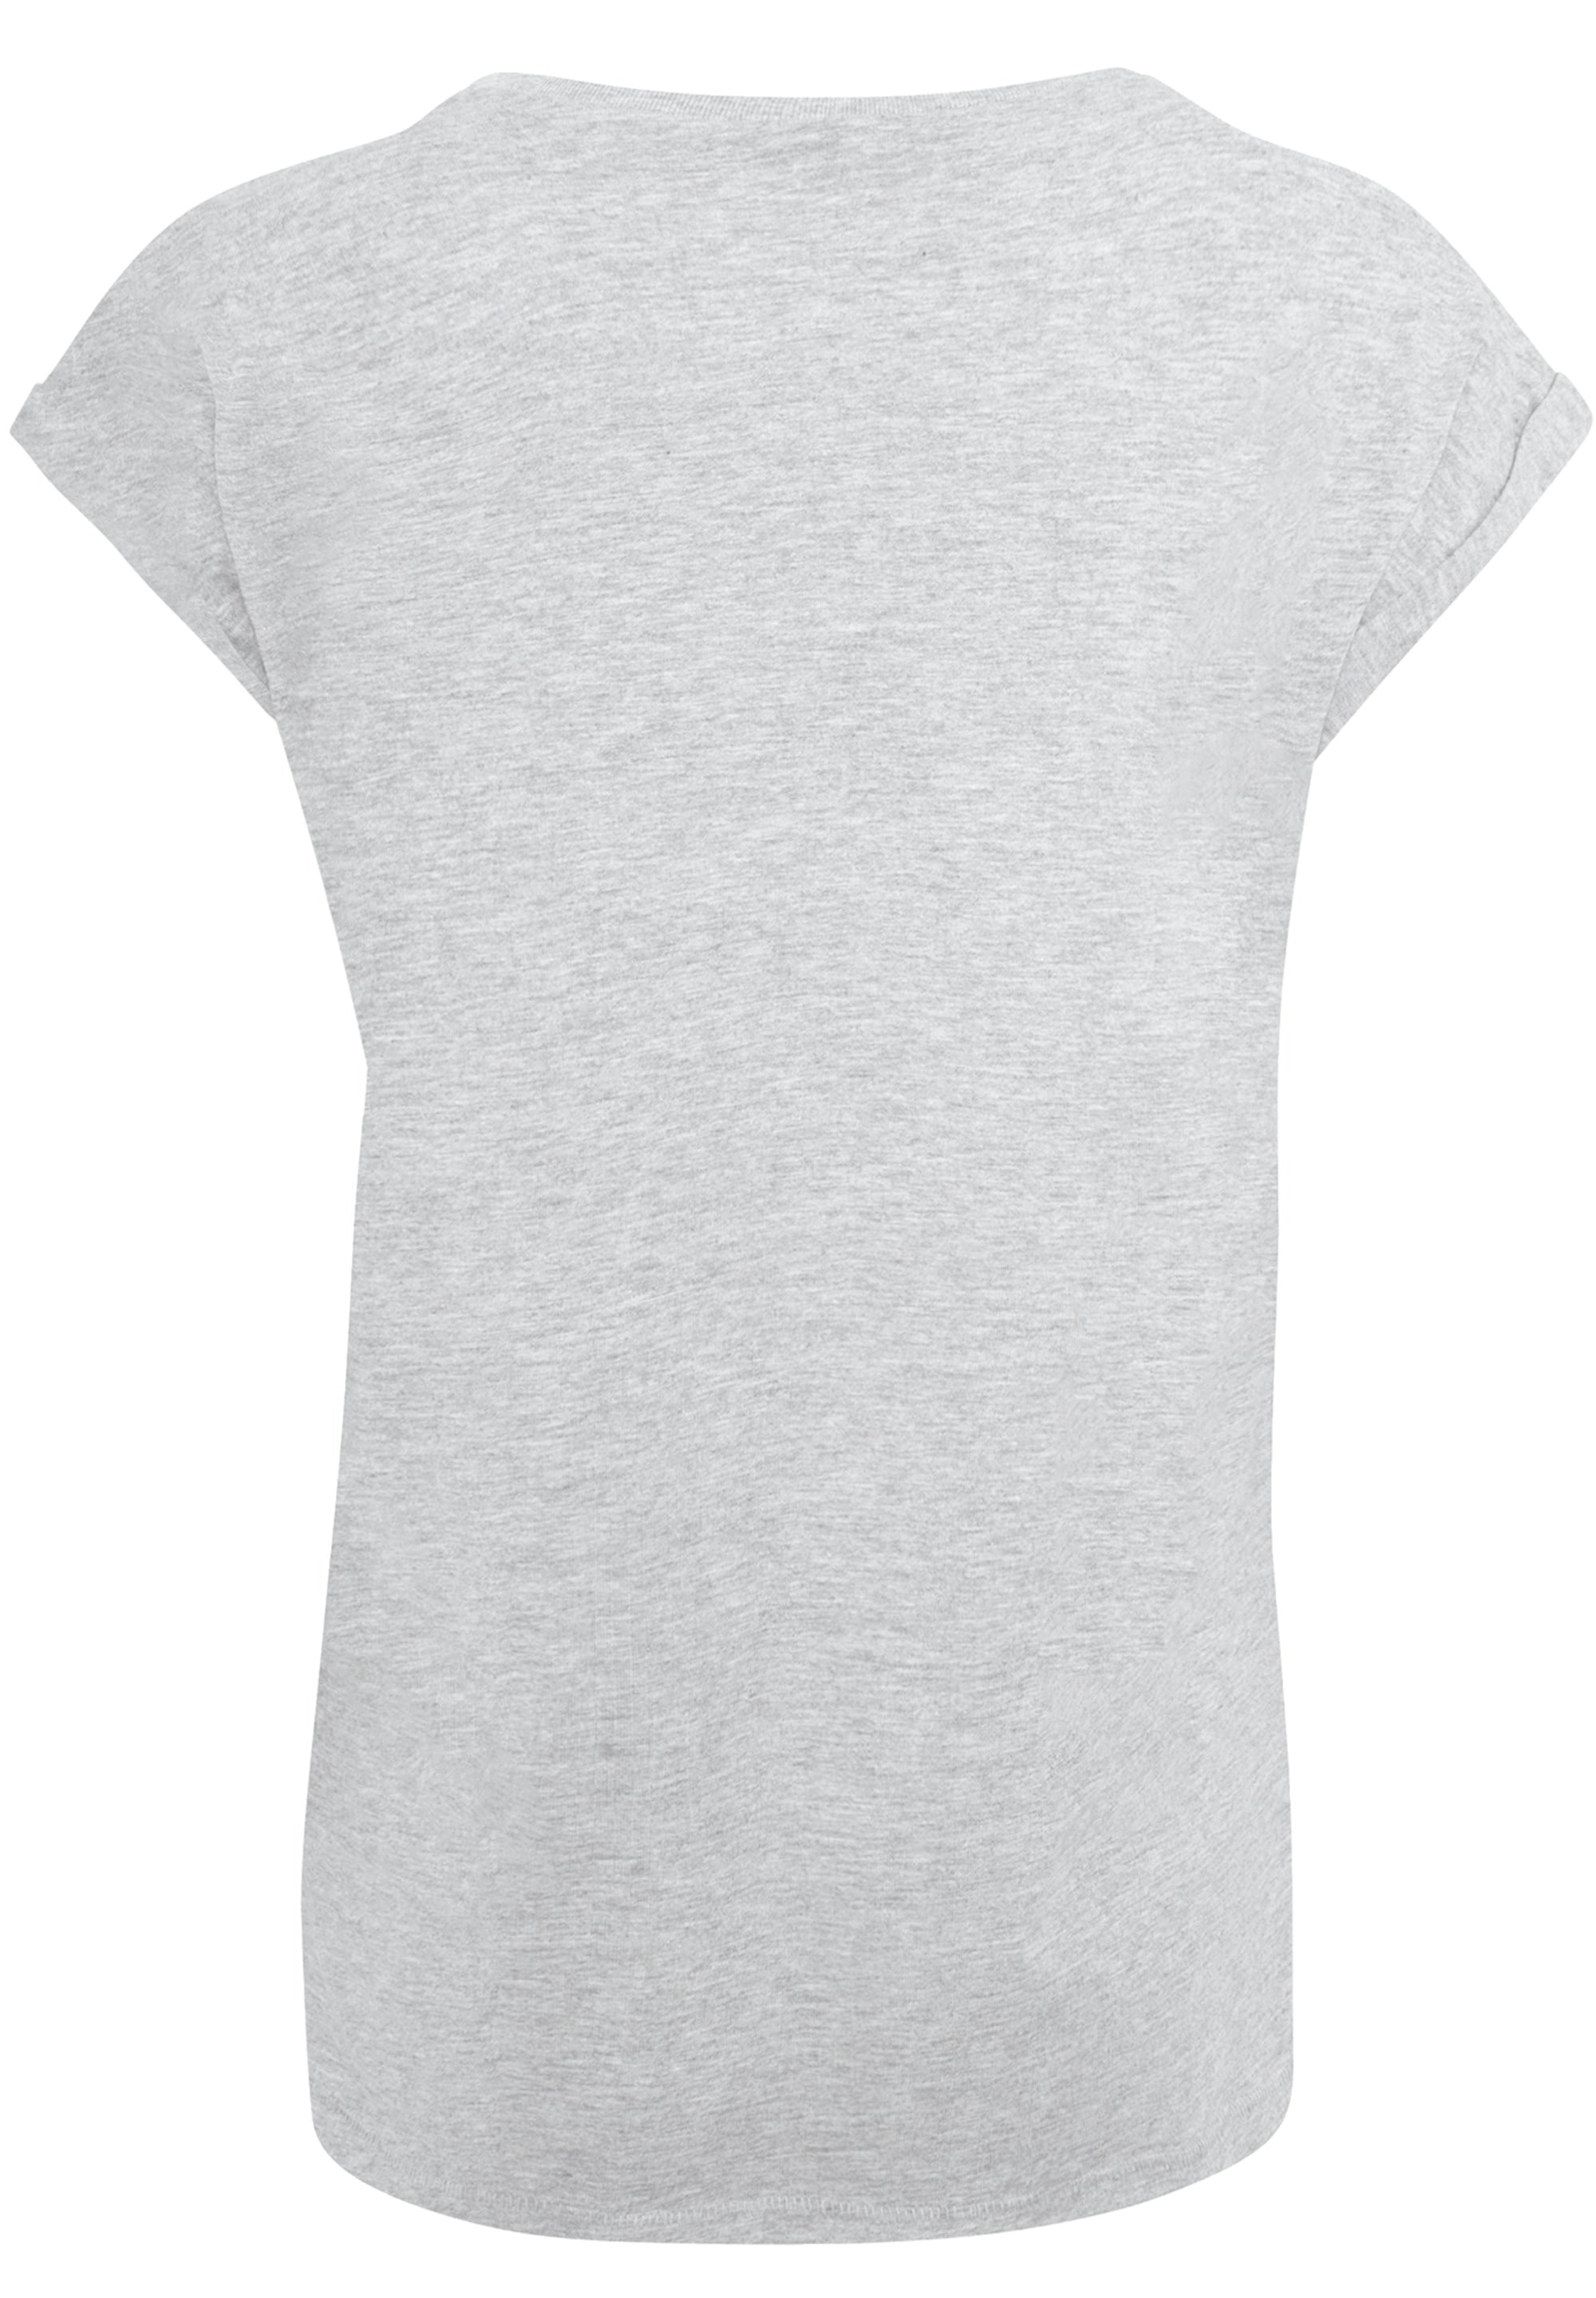 T-Shirt Crest«, Print SIZE F4NT4STIC Queen Classic bestellen »PLUS